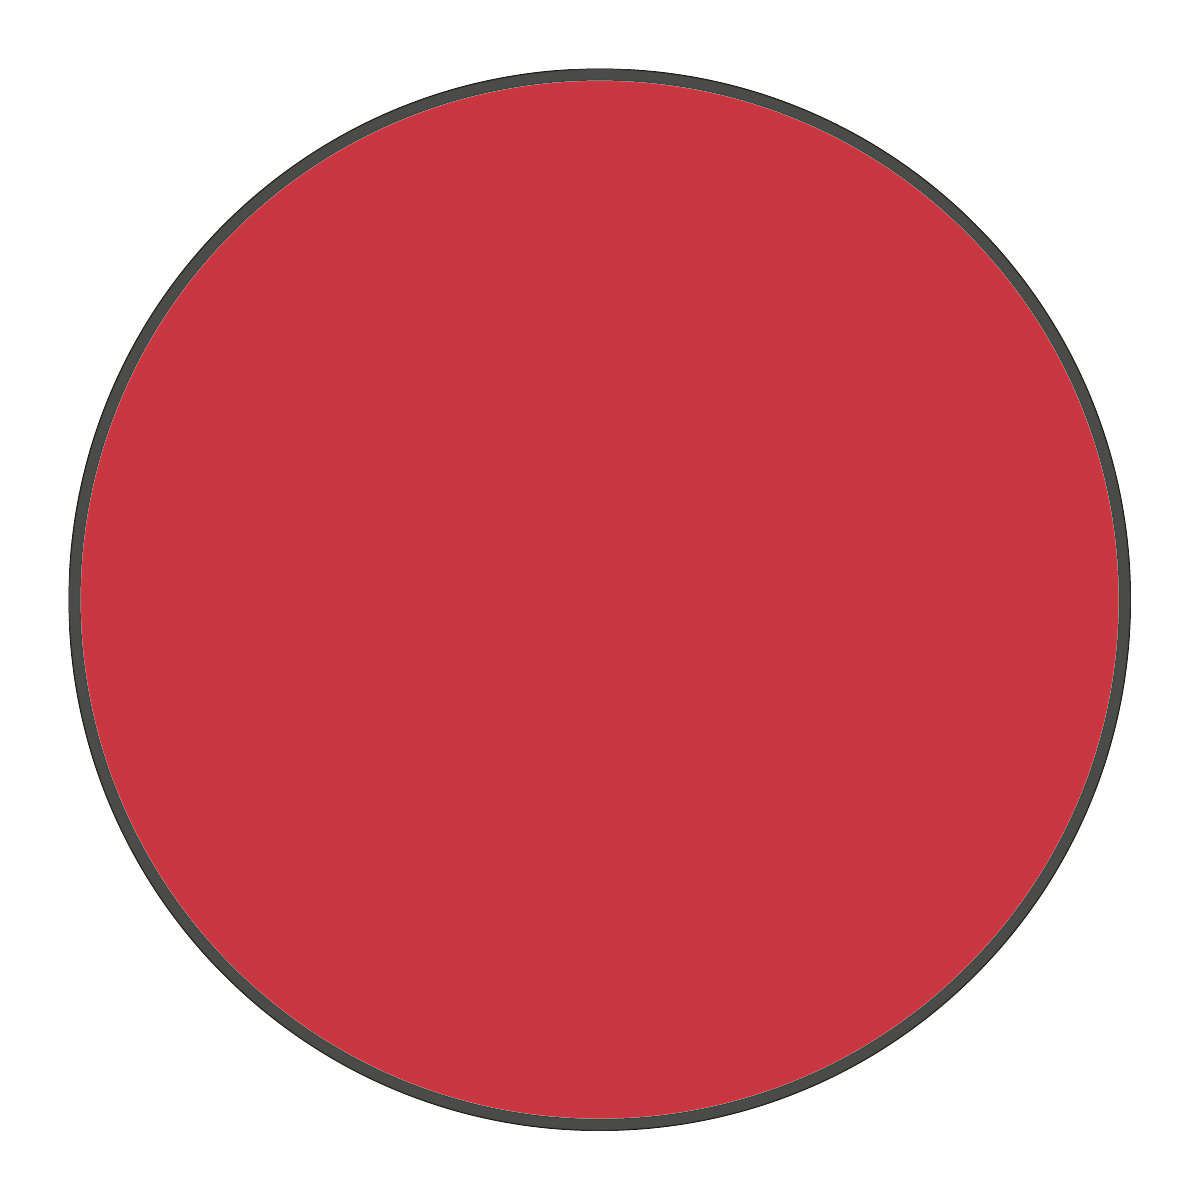 Podlahové značení z PVC, tvar kruhu, bal.j. 100 ks, červená